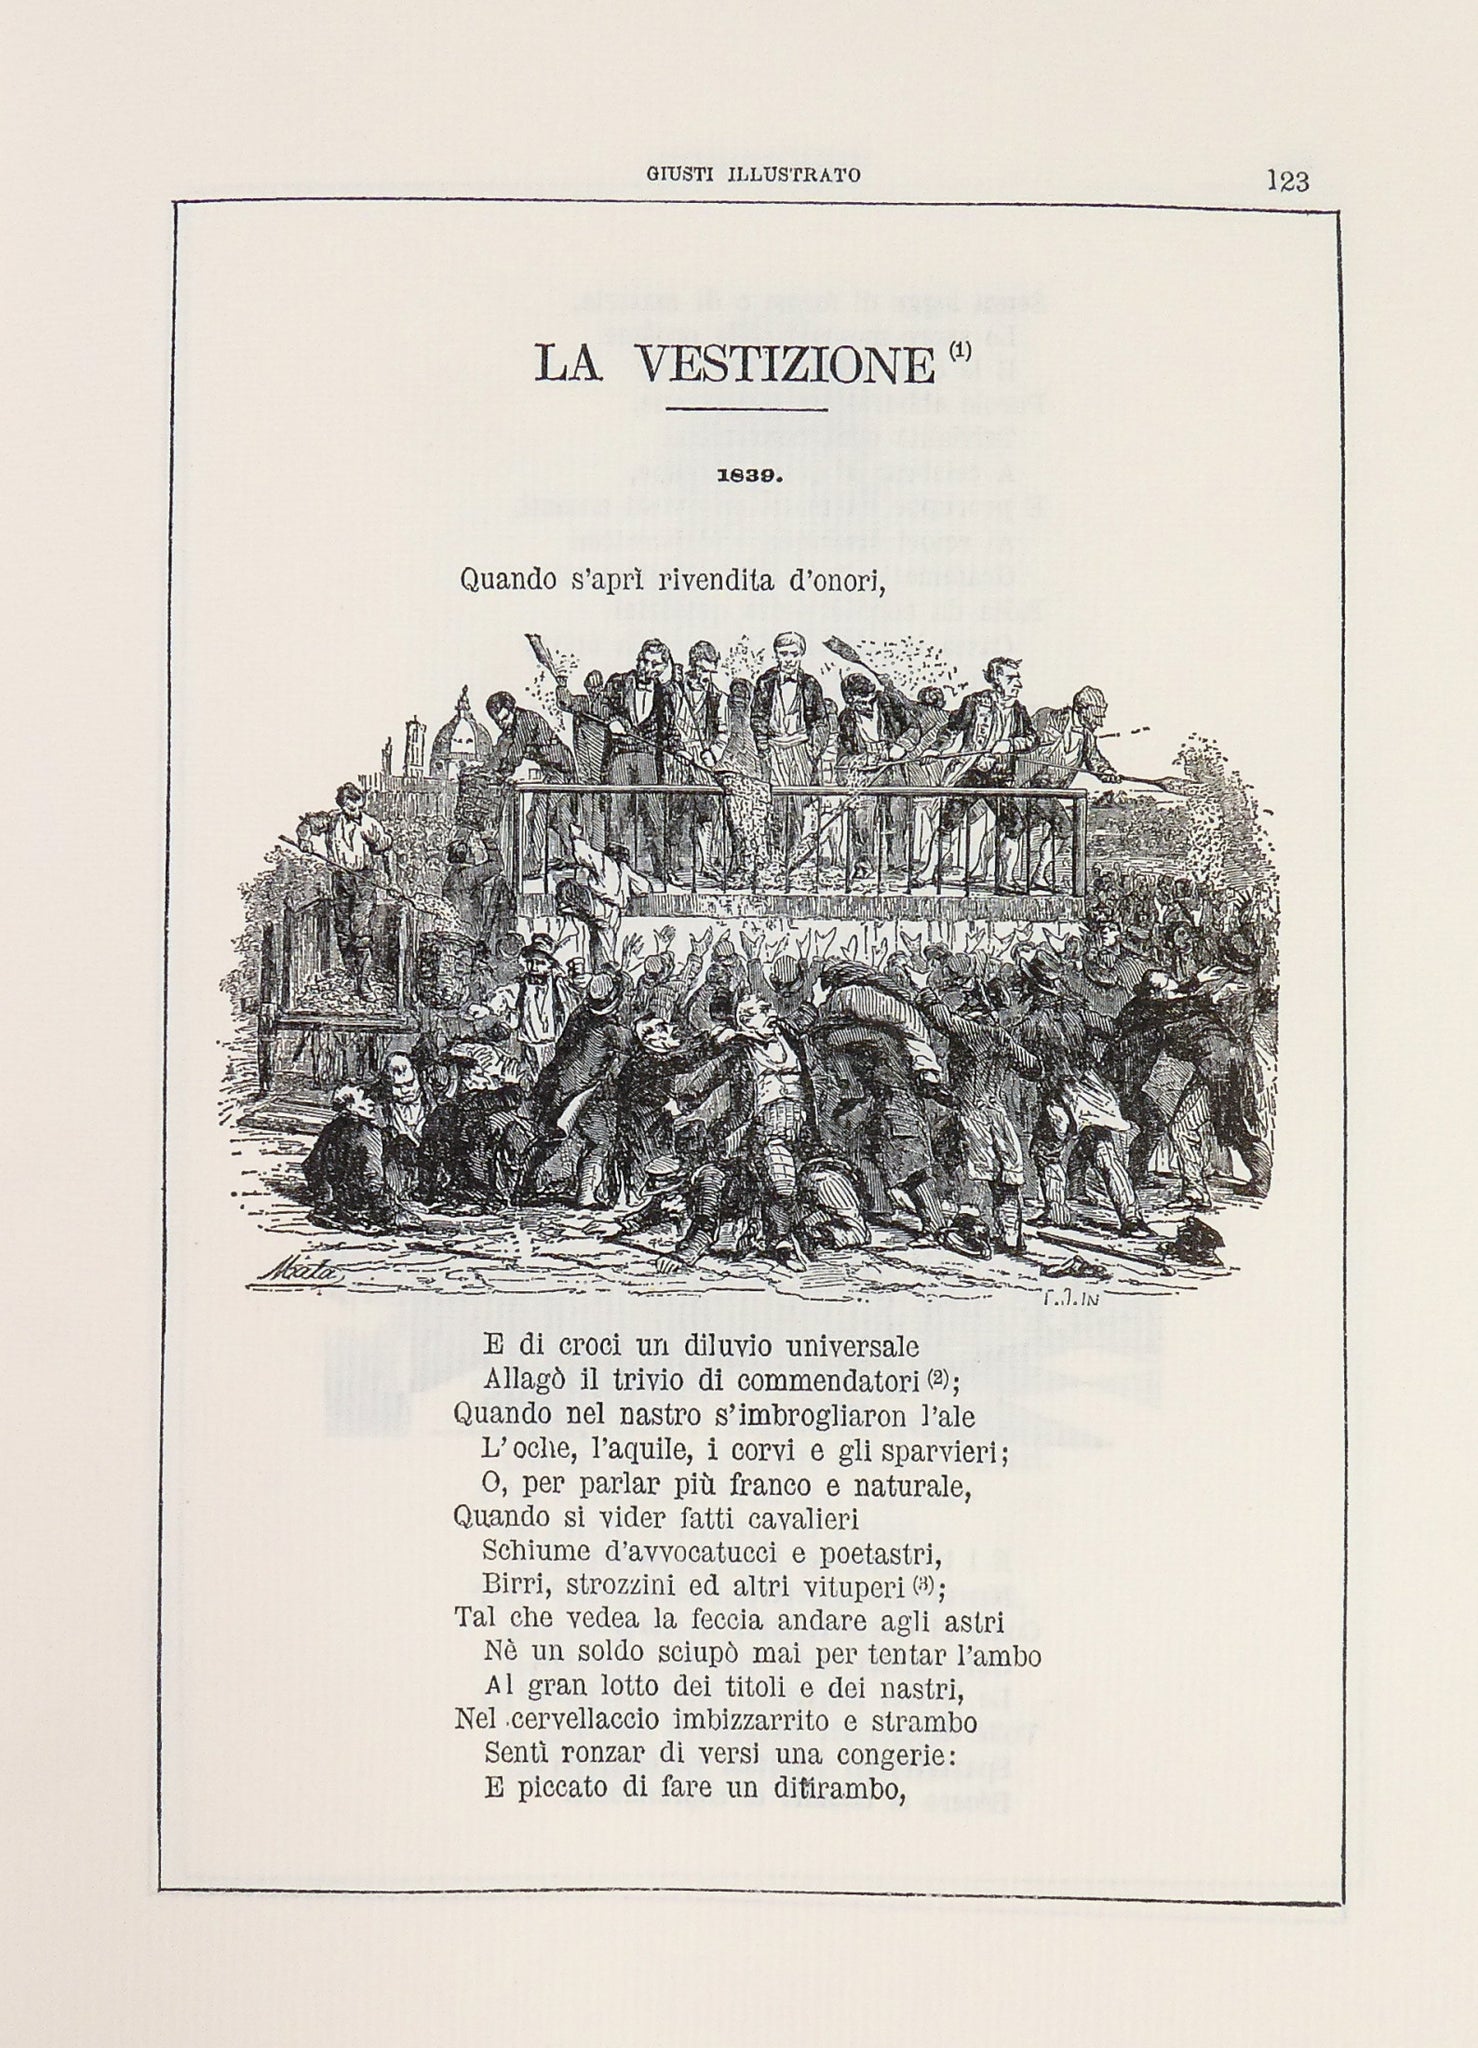 libro poesie giuseppe giusti illustrato matarelli 1887 riproduzione 1969 nei